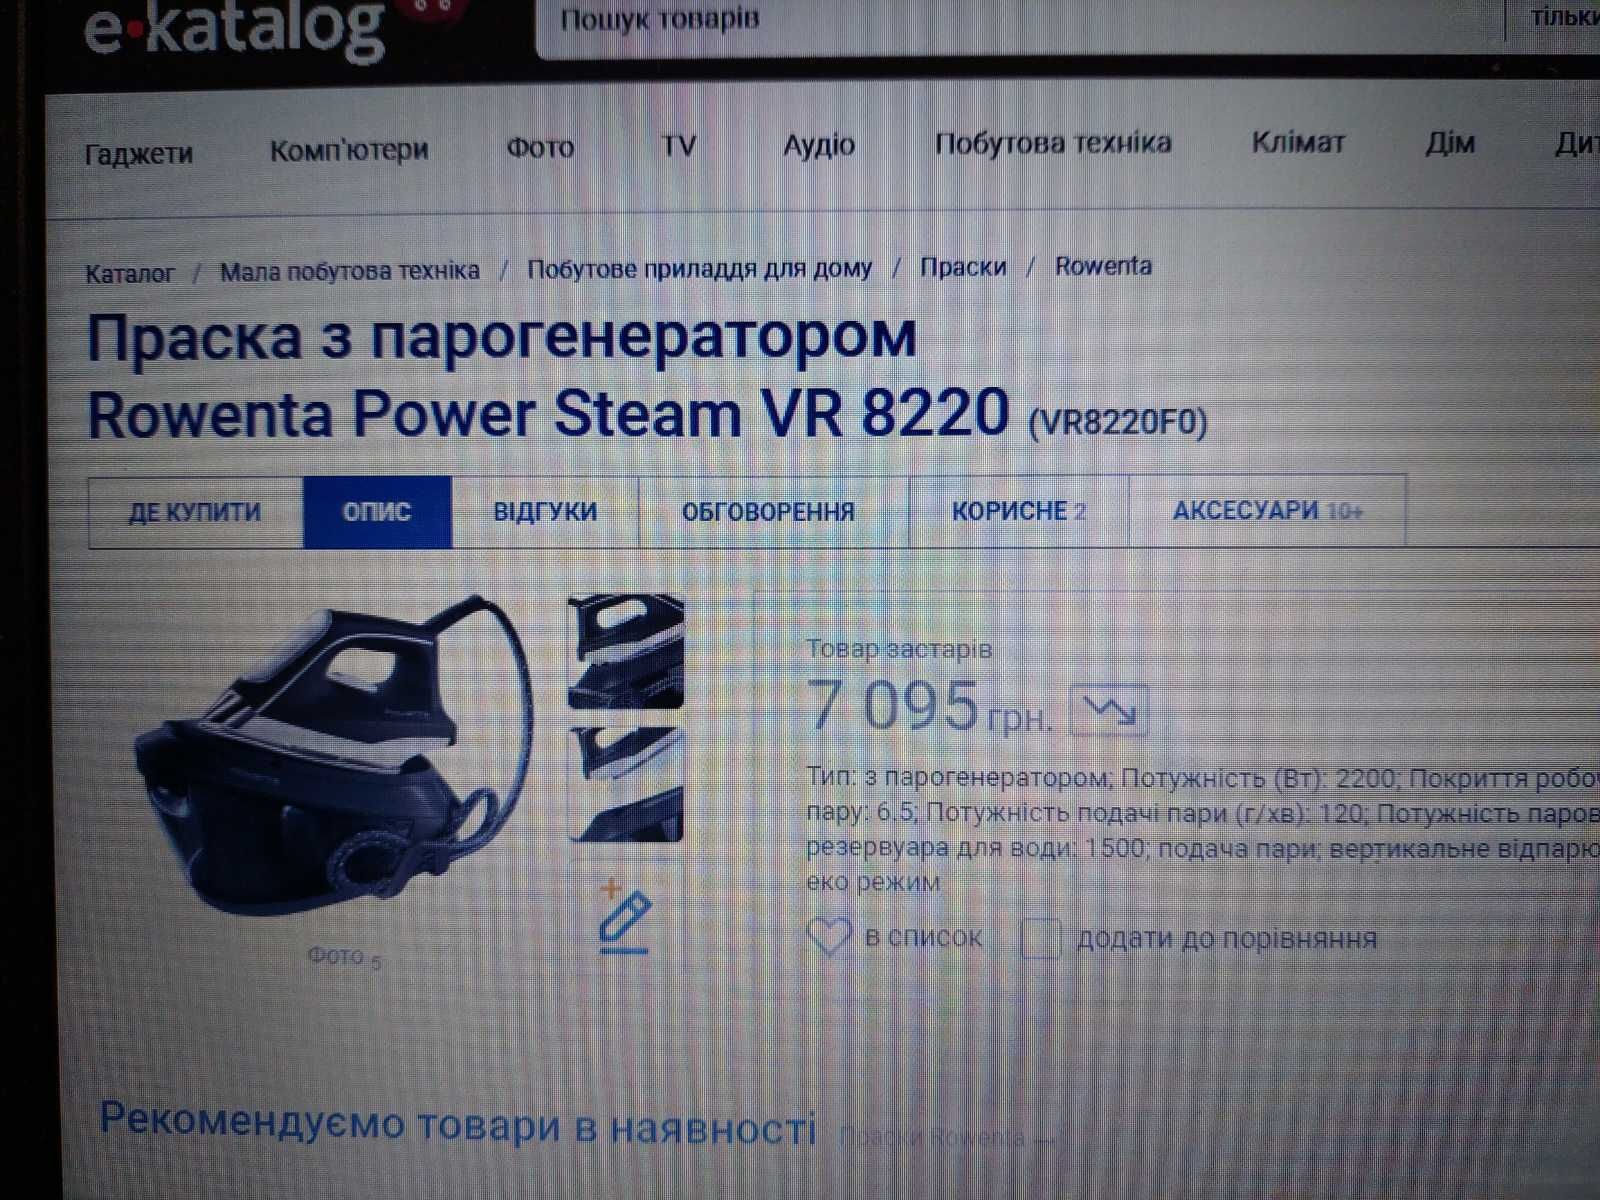 Праска з парогенератором Rowenta Power Steam VR 8220